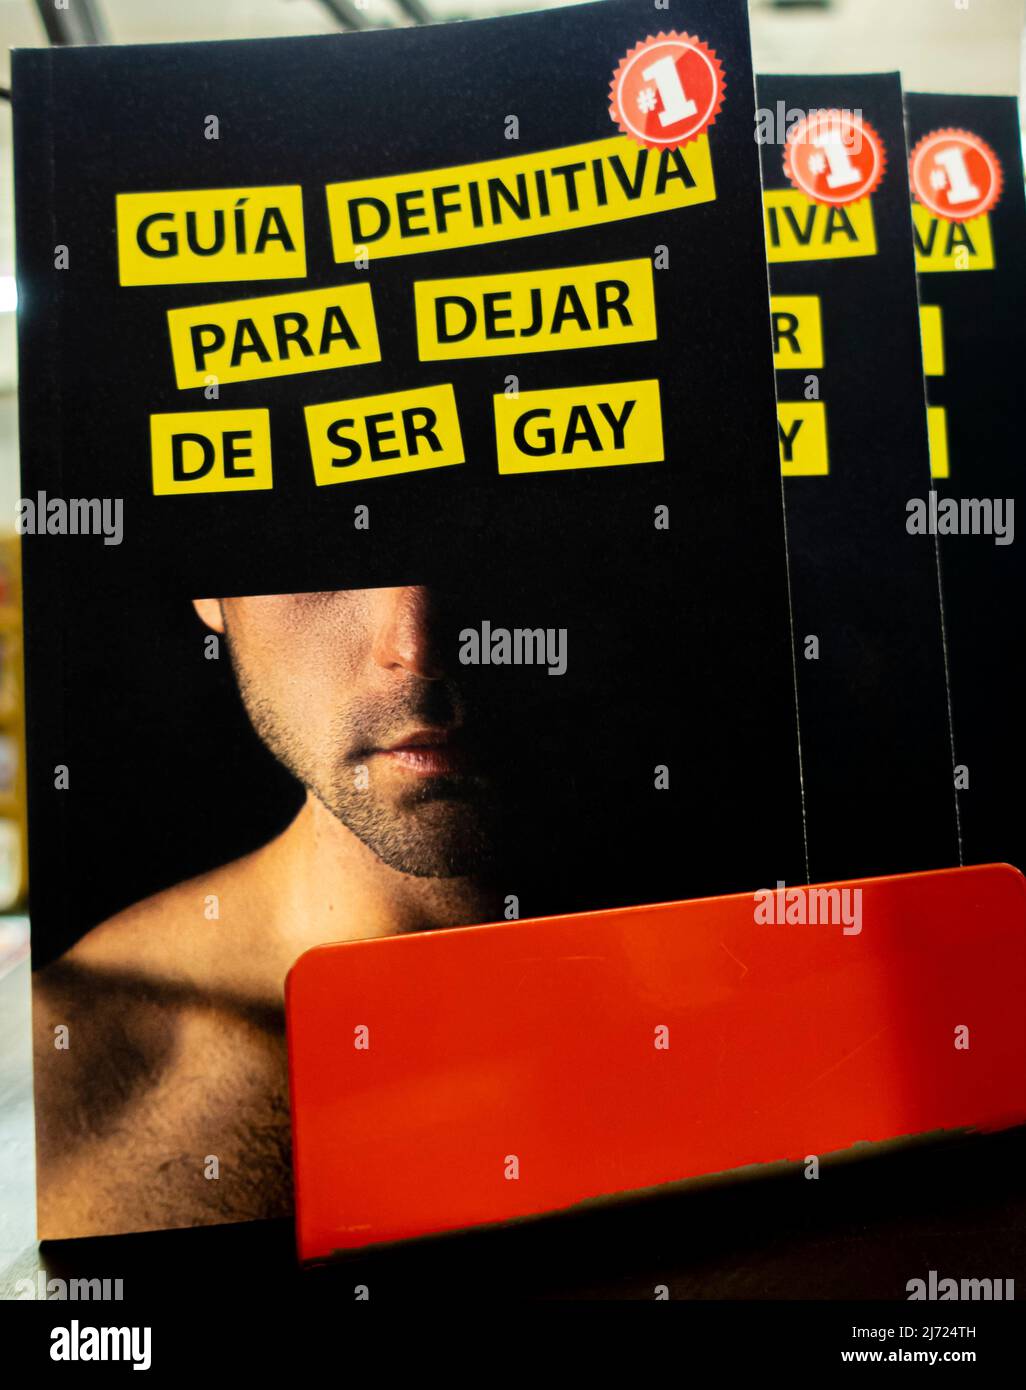 Libri gay immagini e fotografie stock ad alta risoluzione - Alamy